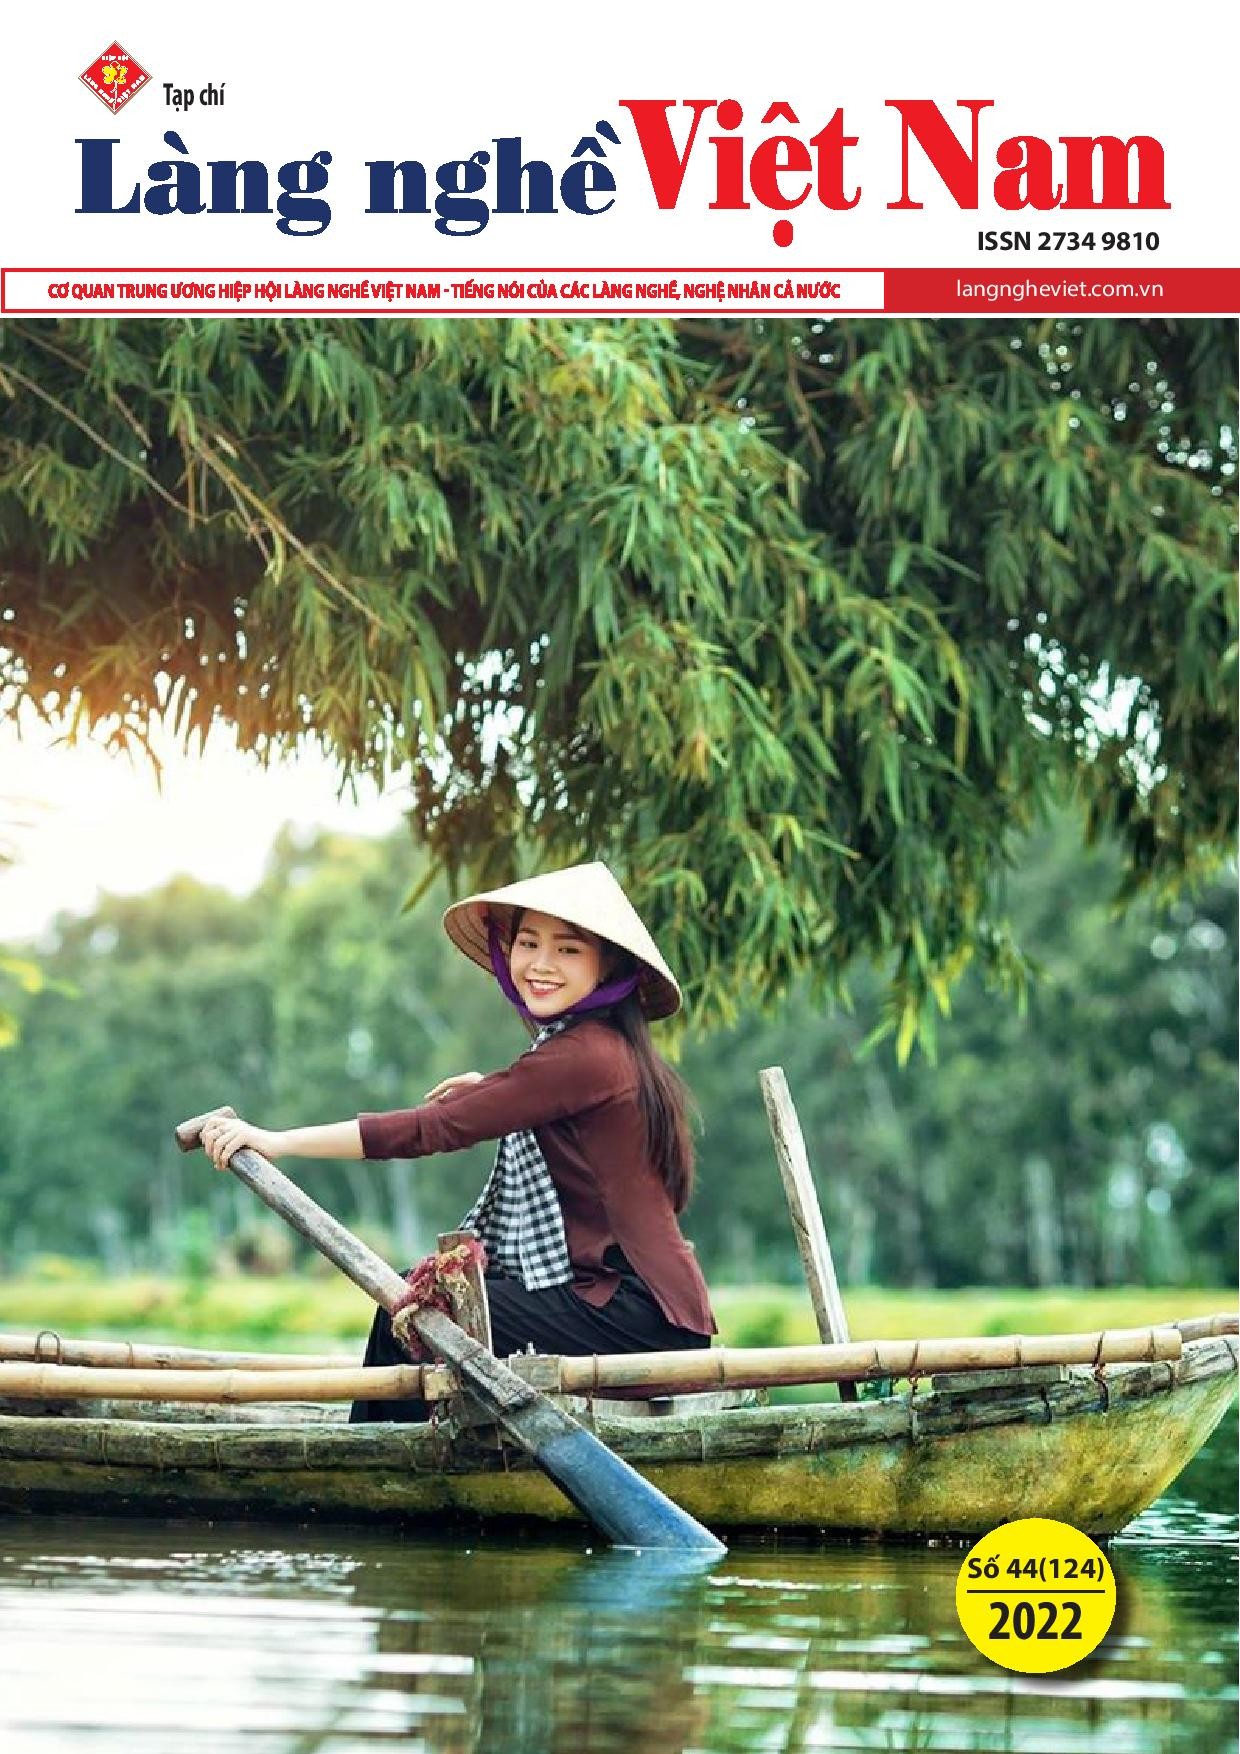 Tạp chí Làng nghề Việt Nam số 44 (124)/2022